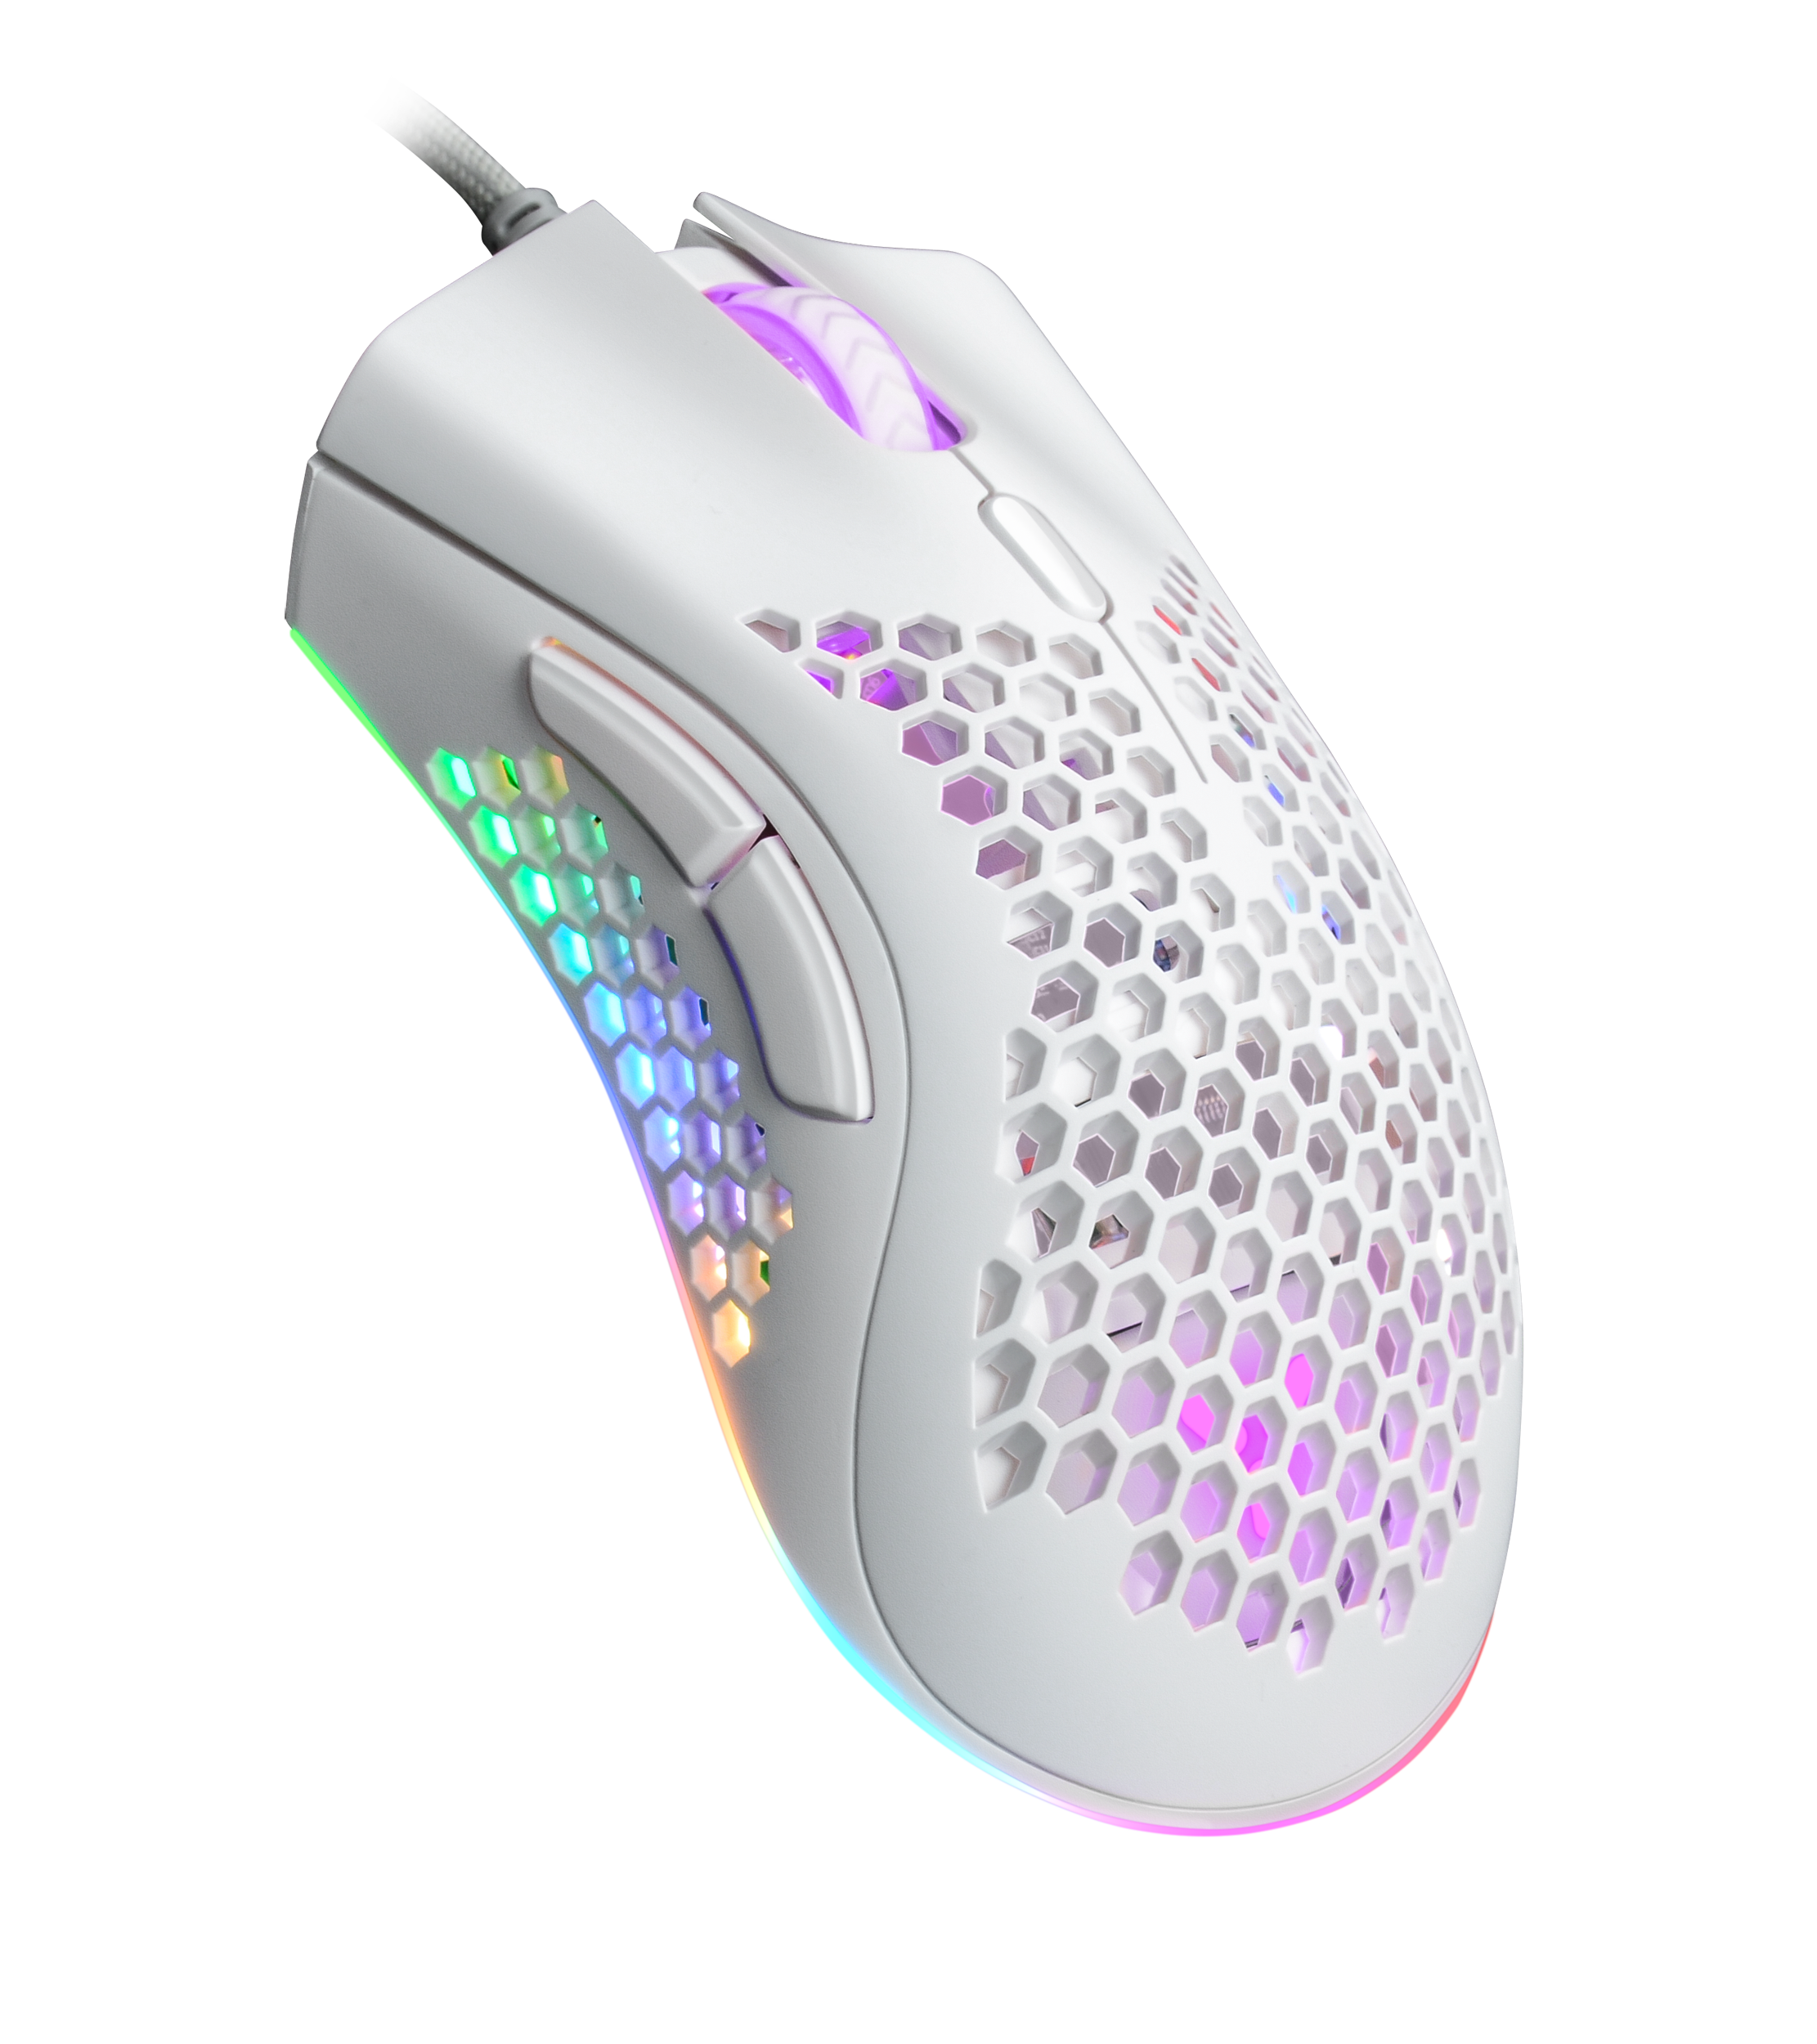 ISY IGM 4500 - Mouse per gaming, Connessione con cavo, Ottica con diodi laser, 7200 dpi, Bianco